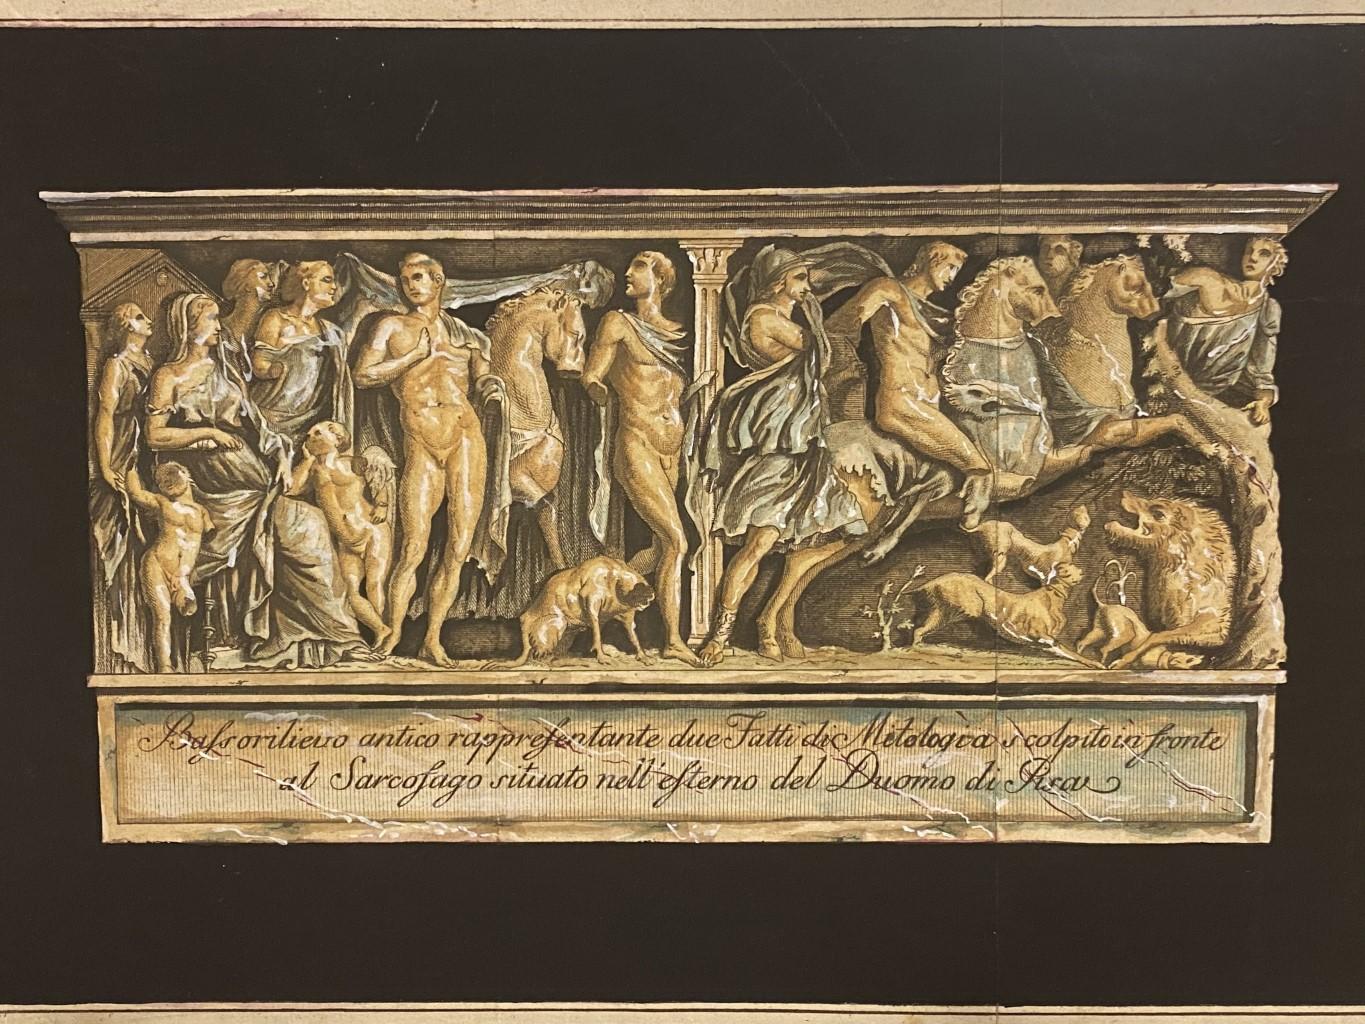 Unknown Figurative Print - Bassorilievo del Sarcofago Romano nel Duomo di Pisa - Original Etching - 1880s